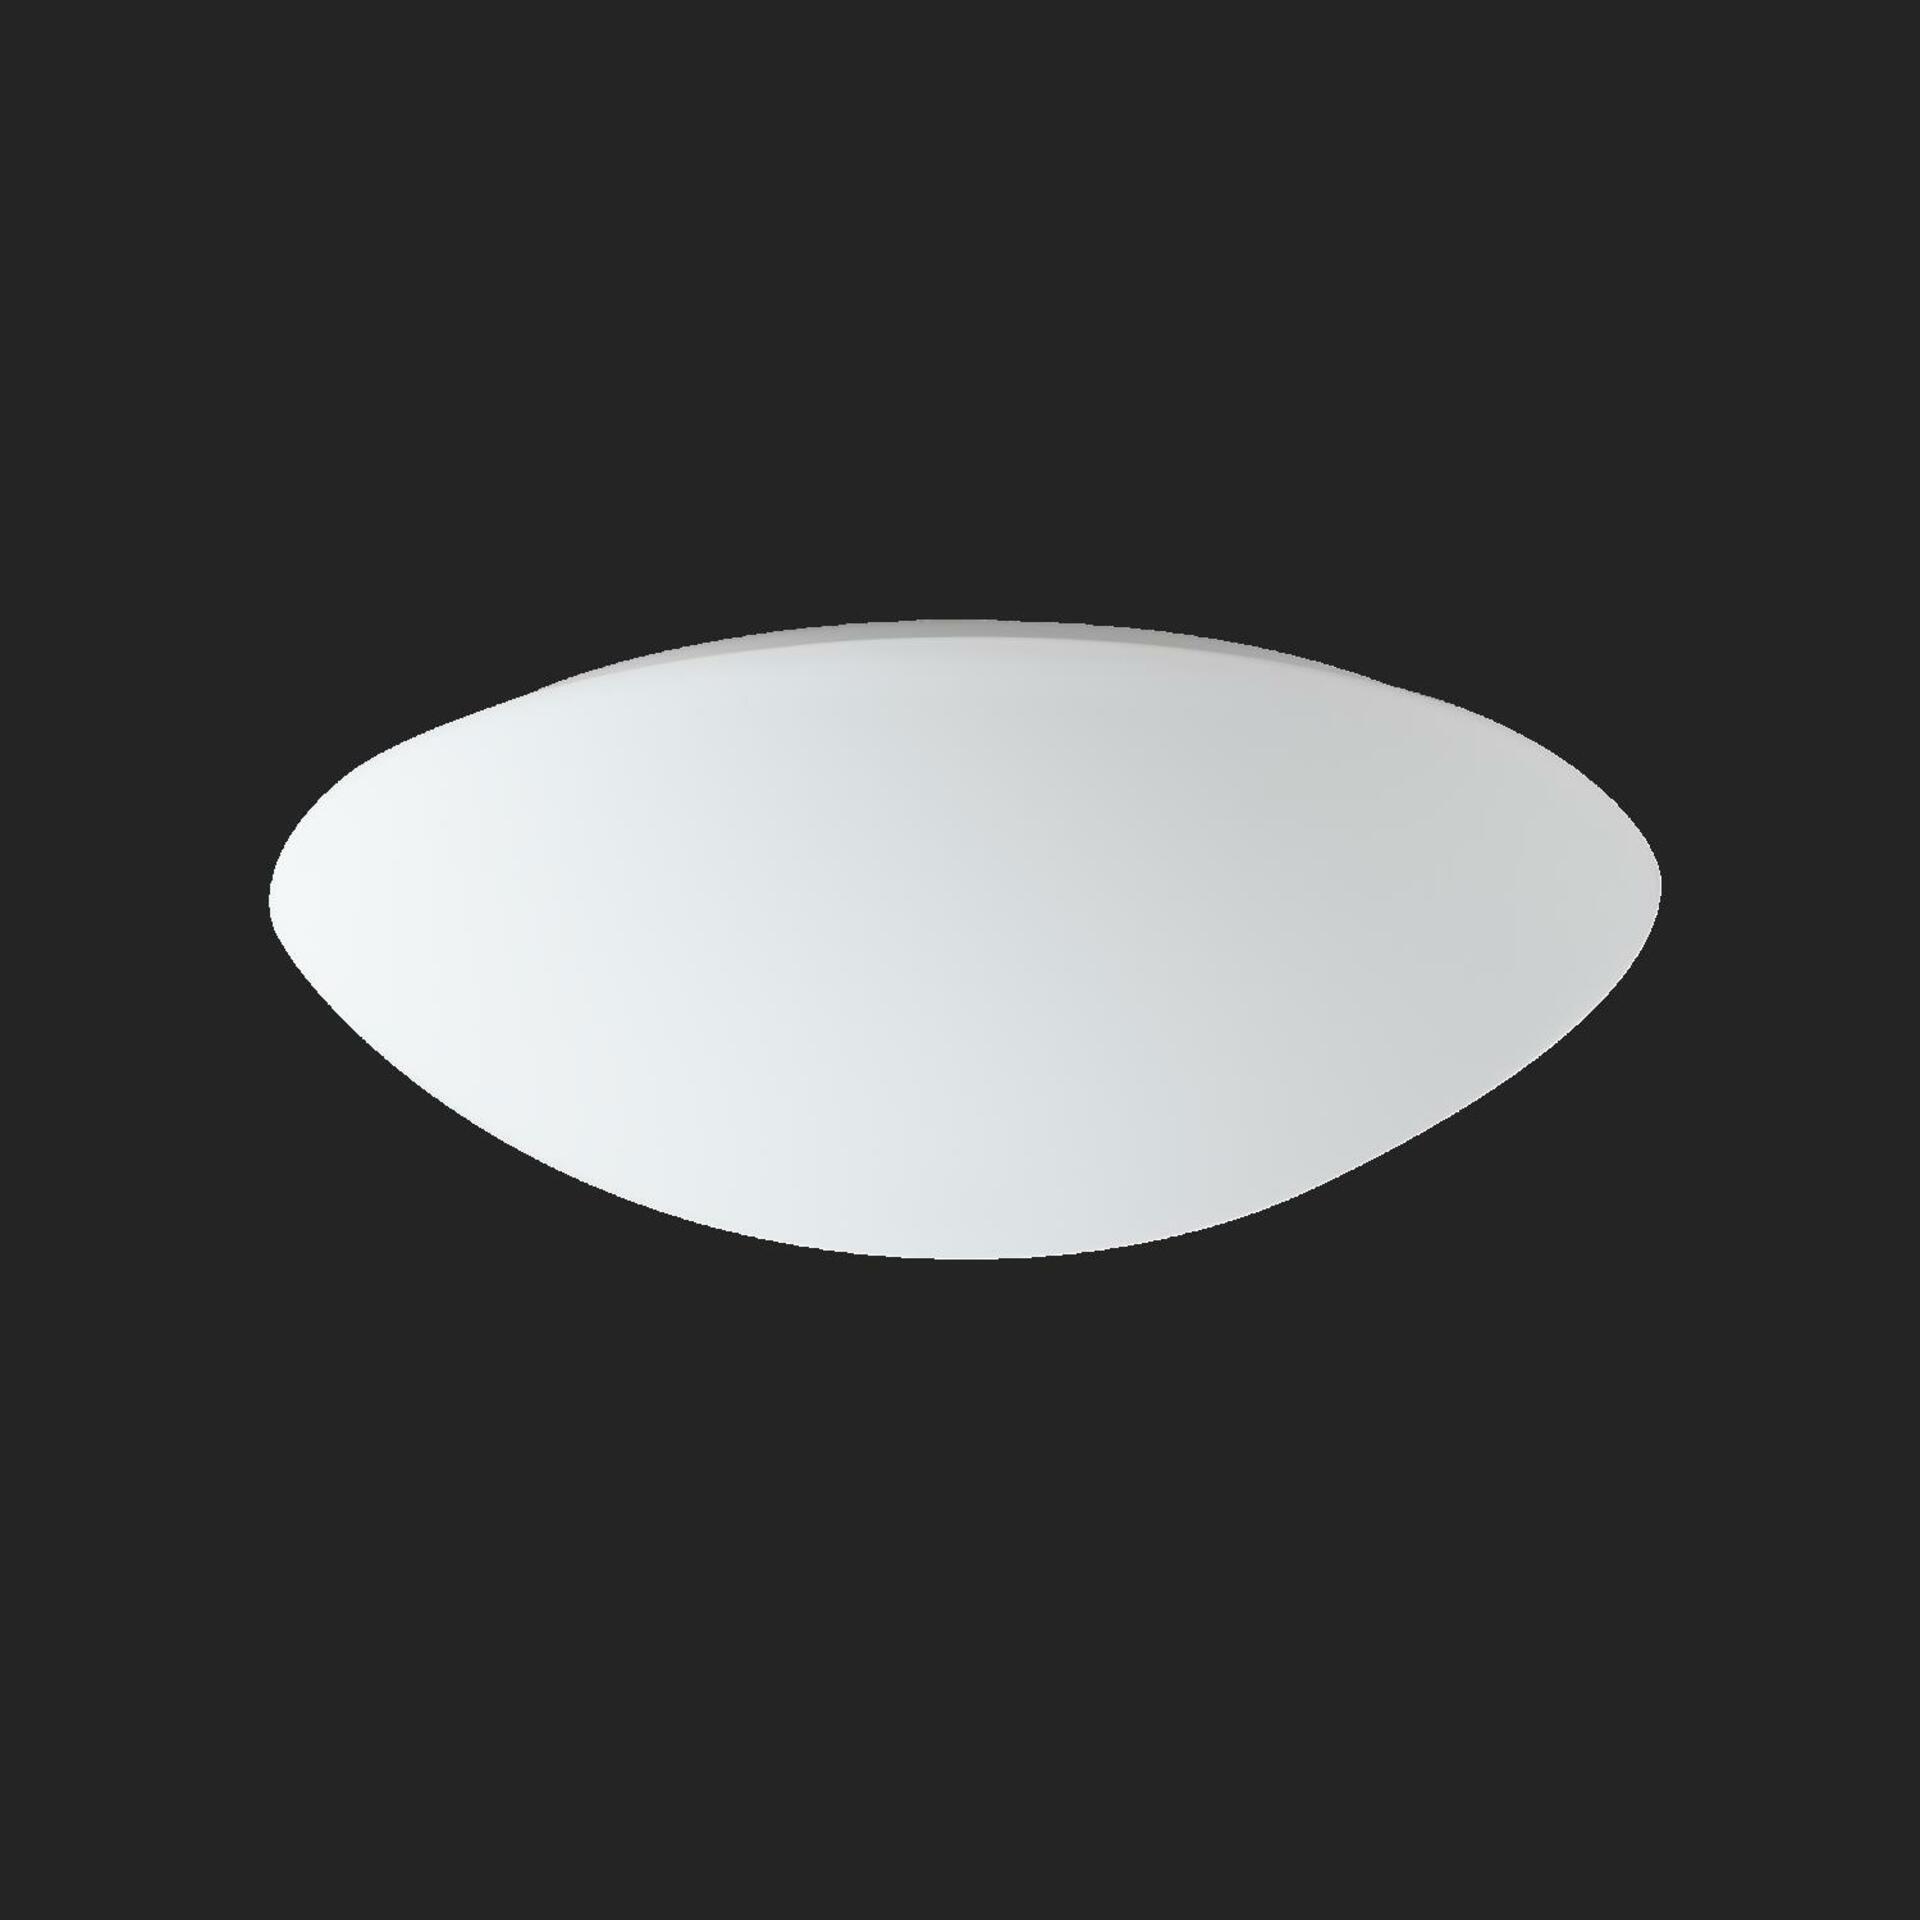 OSMONT 42775 AURA 11 stropní/nástěnné skleněné svítidlo bílá IP44 2x75W E27